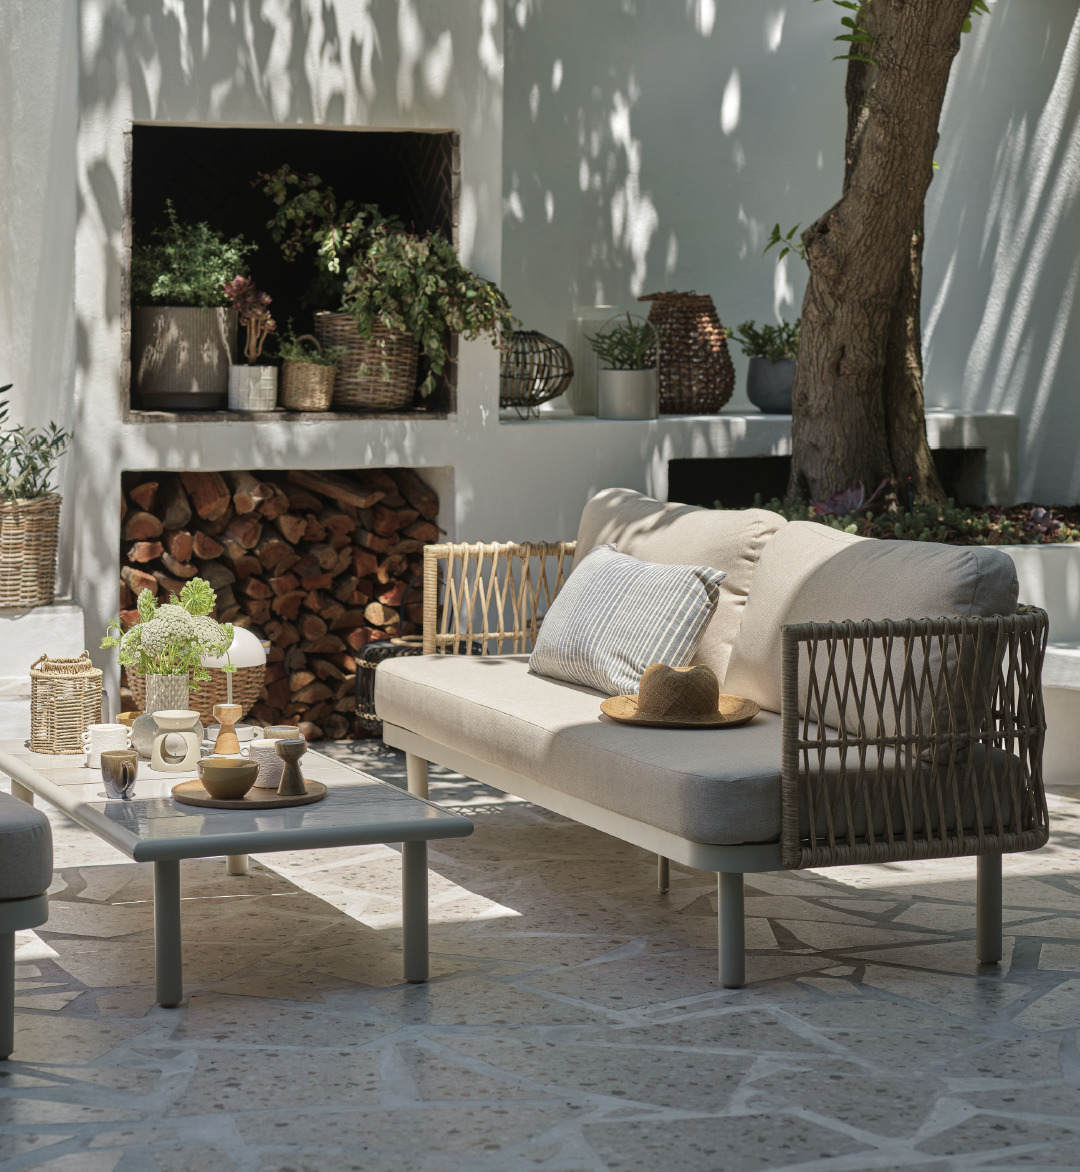 Σαλόνι κήπου με καναπέ σε μπεζ απόχρωση και τραπέζι με πλαίσιο αλουμινίου και κεραμική επιφάνεια